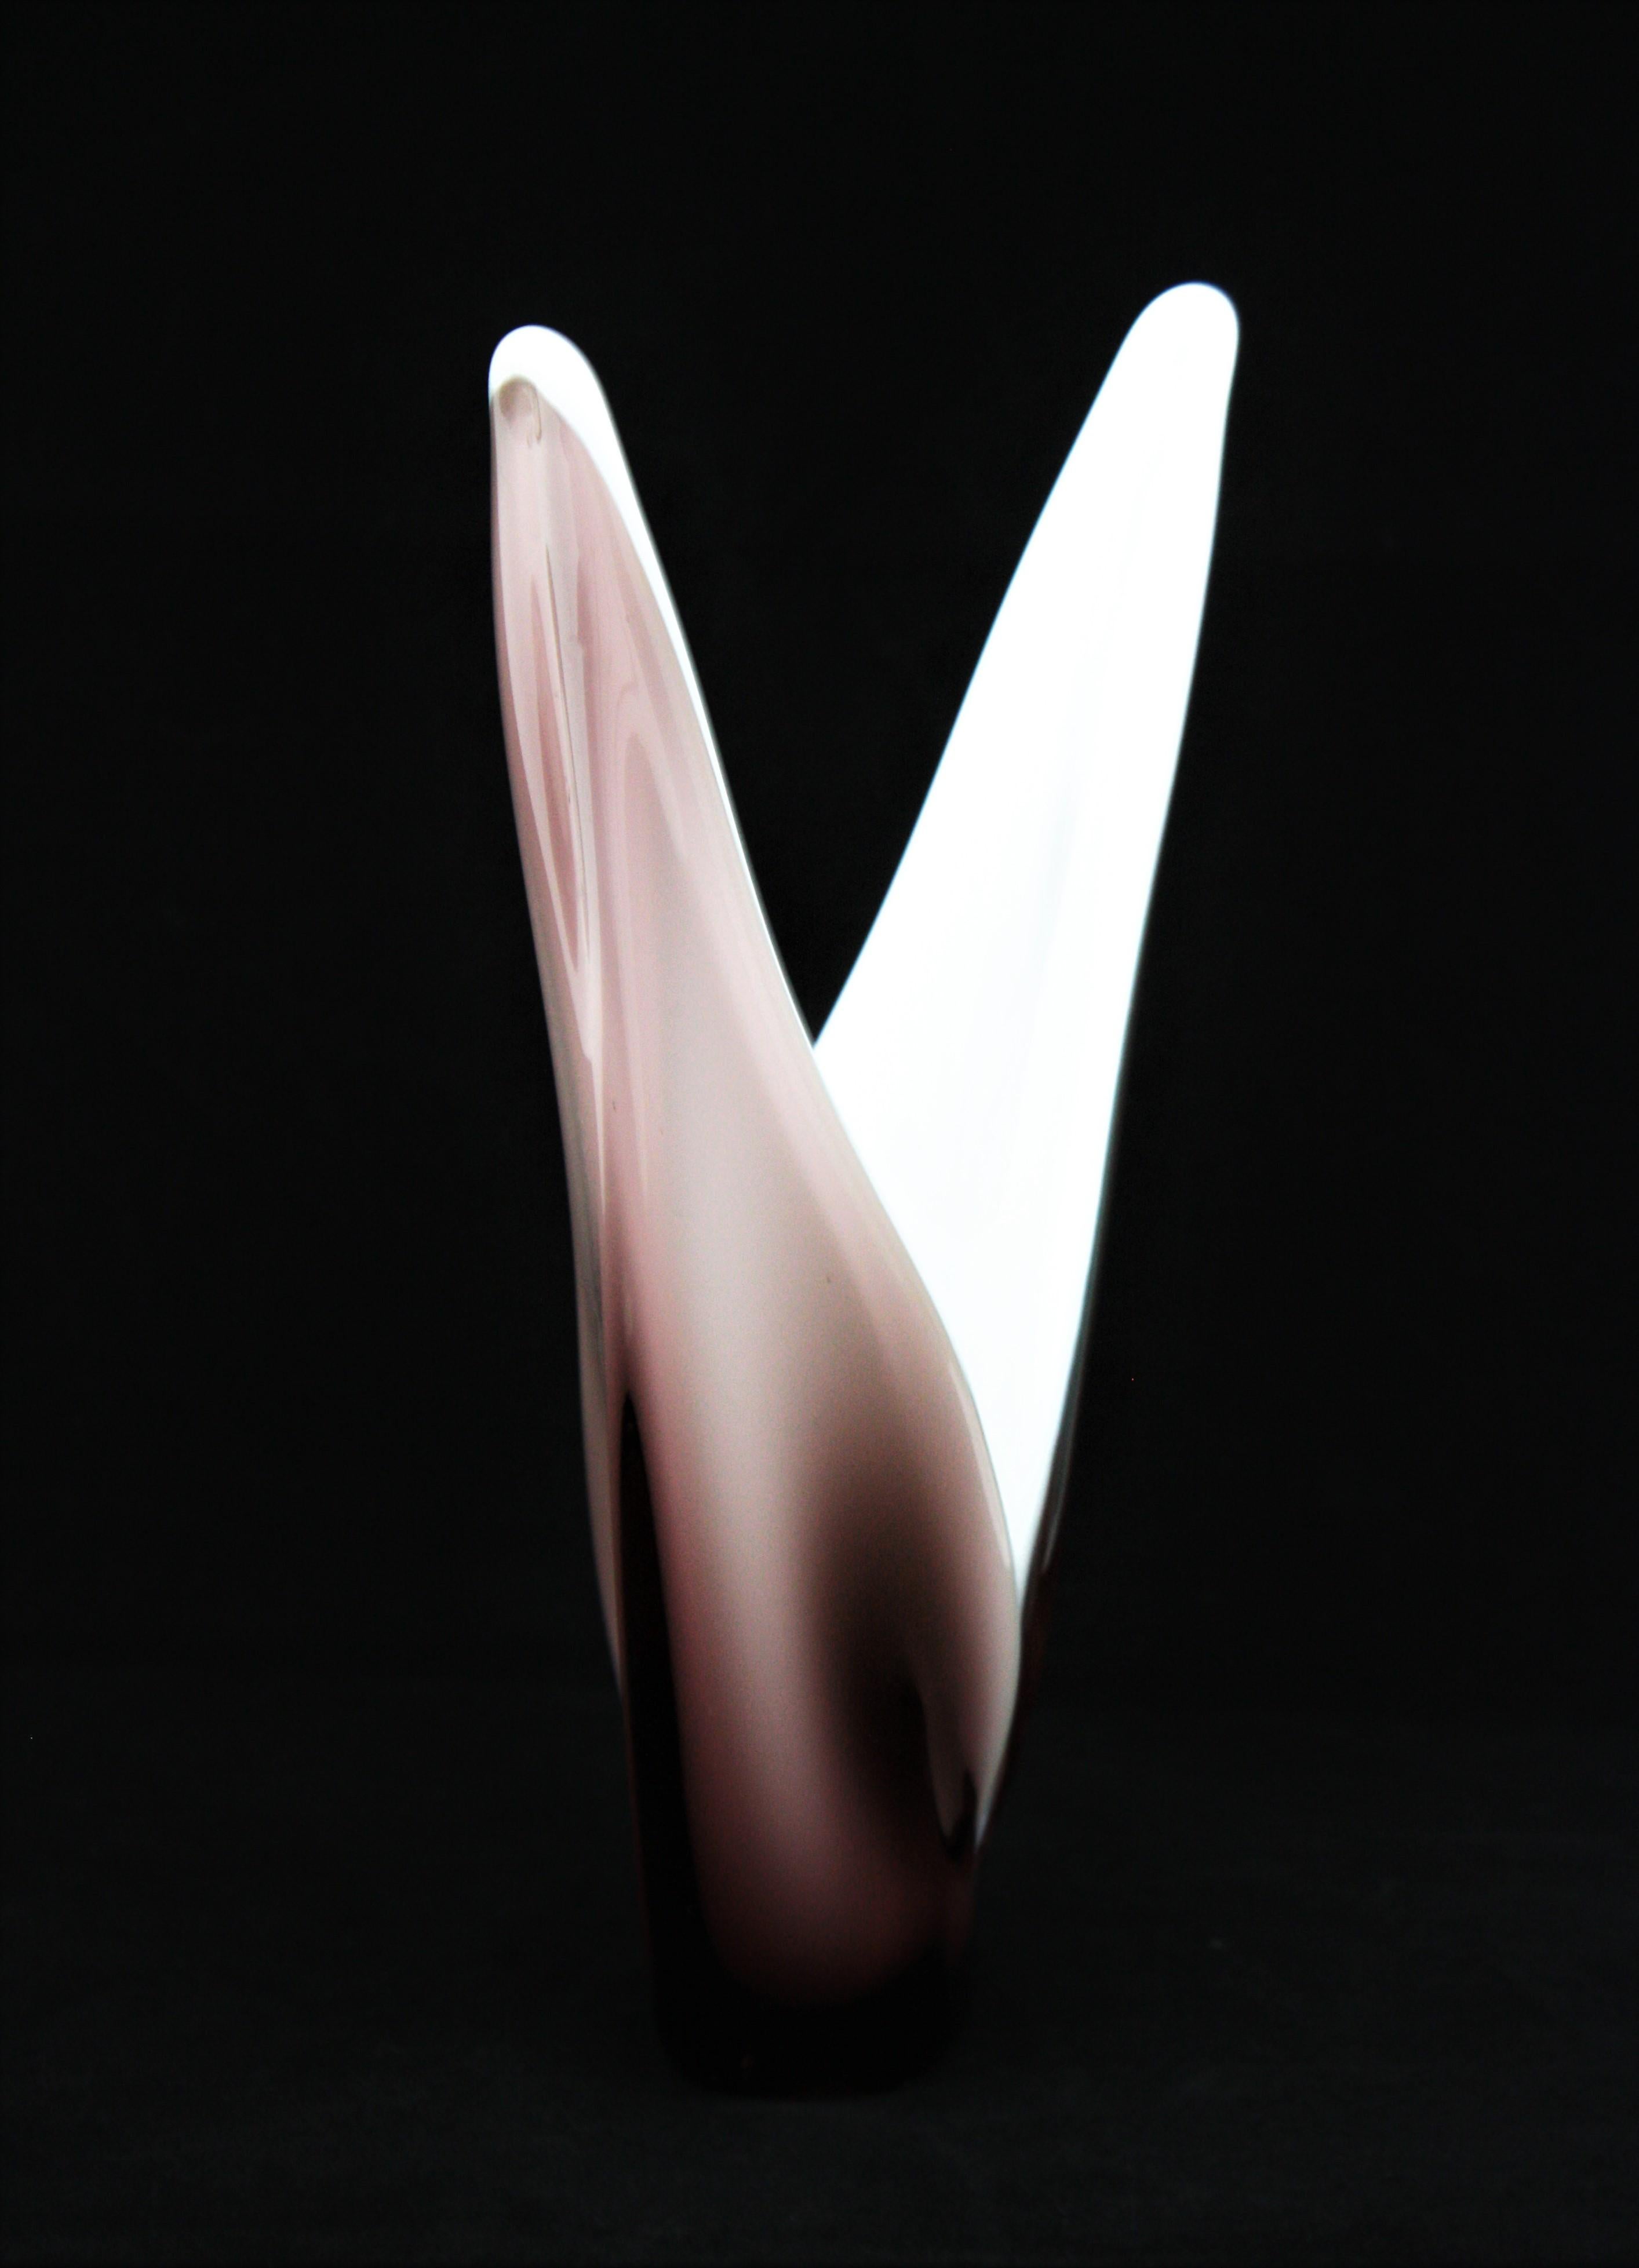 Vase ou centre de table sculptural en verre de Murano dans des tons de verre lilas et de verre blanc laiteux, Italie, années 1960.
En utilisant la technique Sommerso, la partie intérieure est en verre opalin et la partie extérieure est en verre